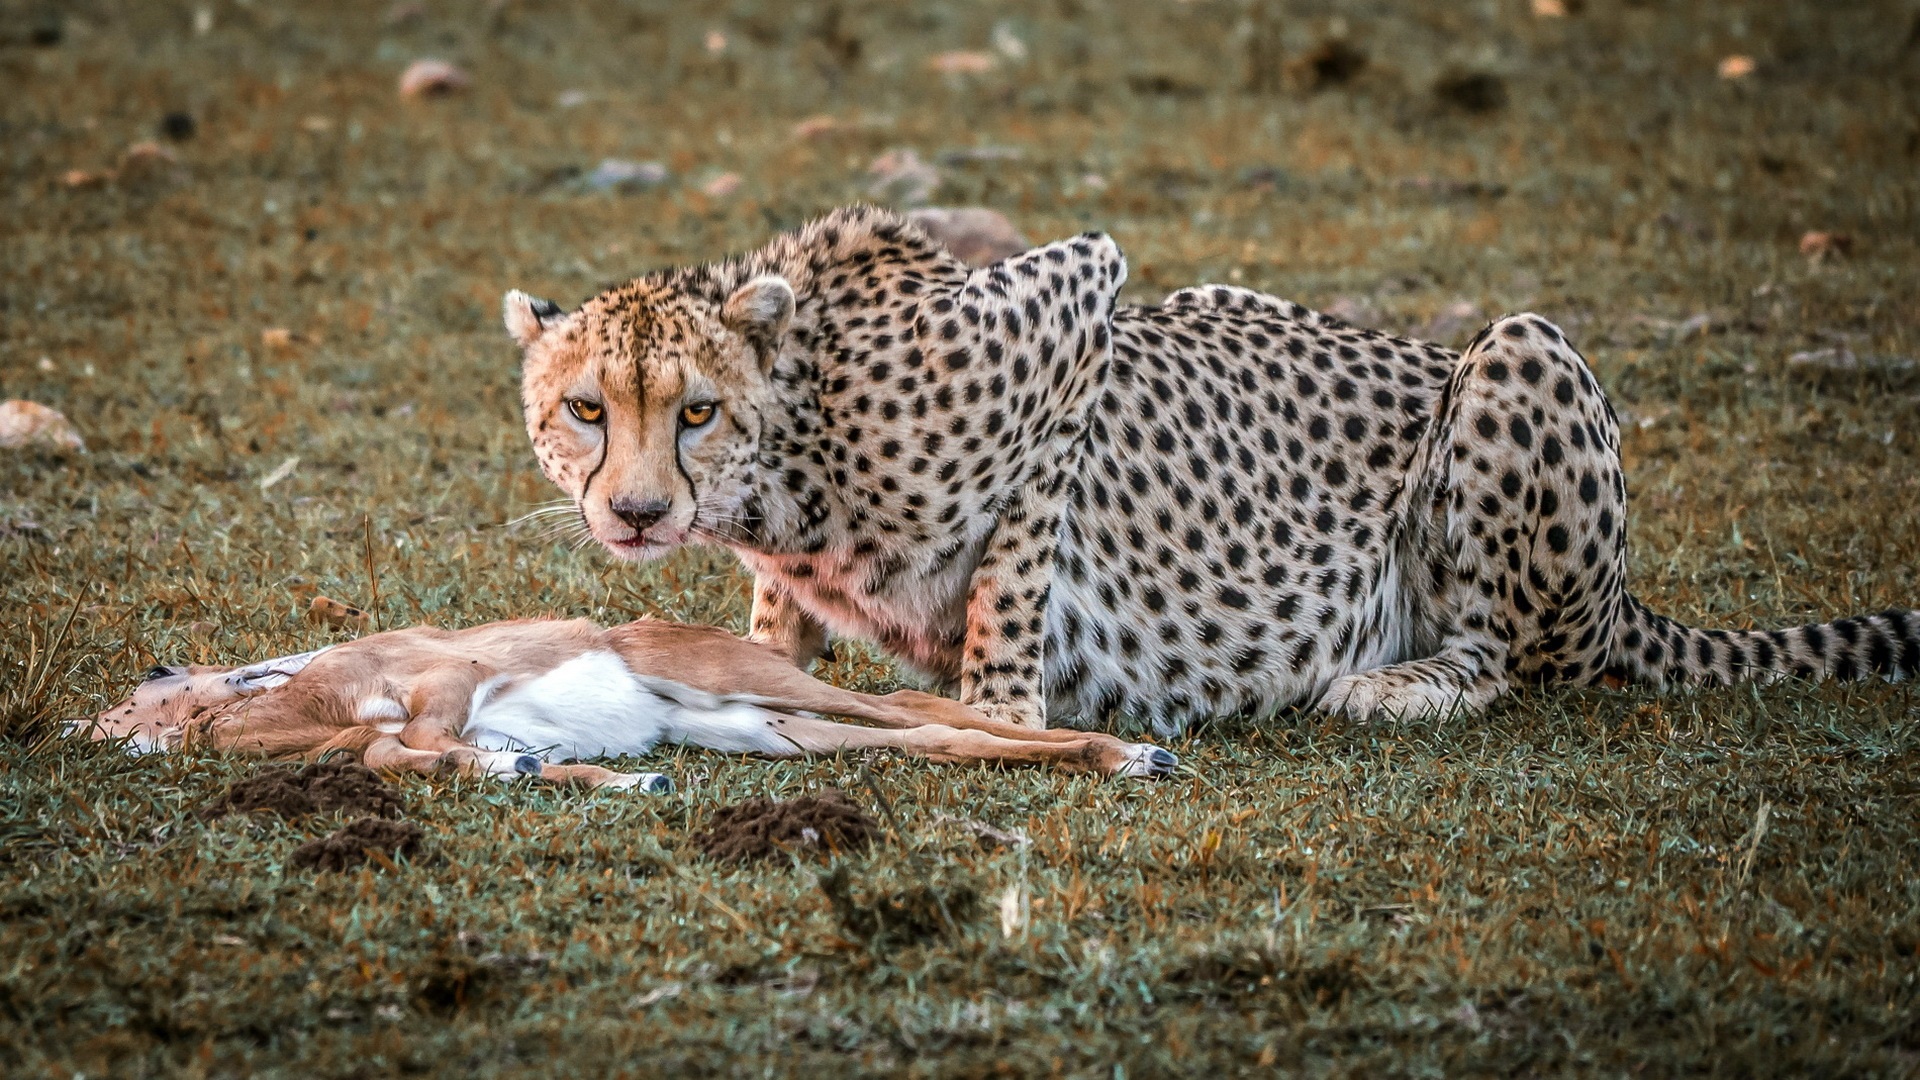 General 1920x1080 cheetah hunting impala carnivore animals big cats mammals looking at viewer nature wildlife